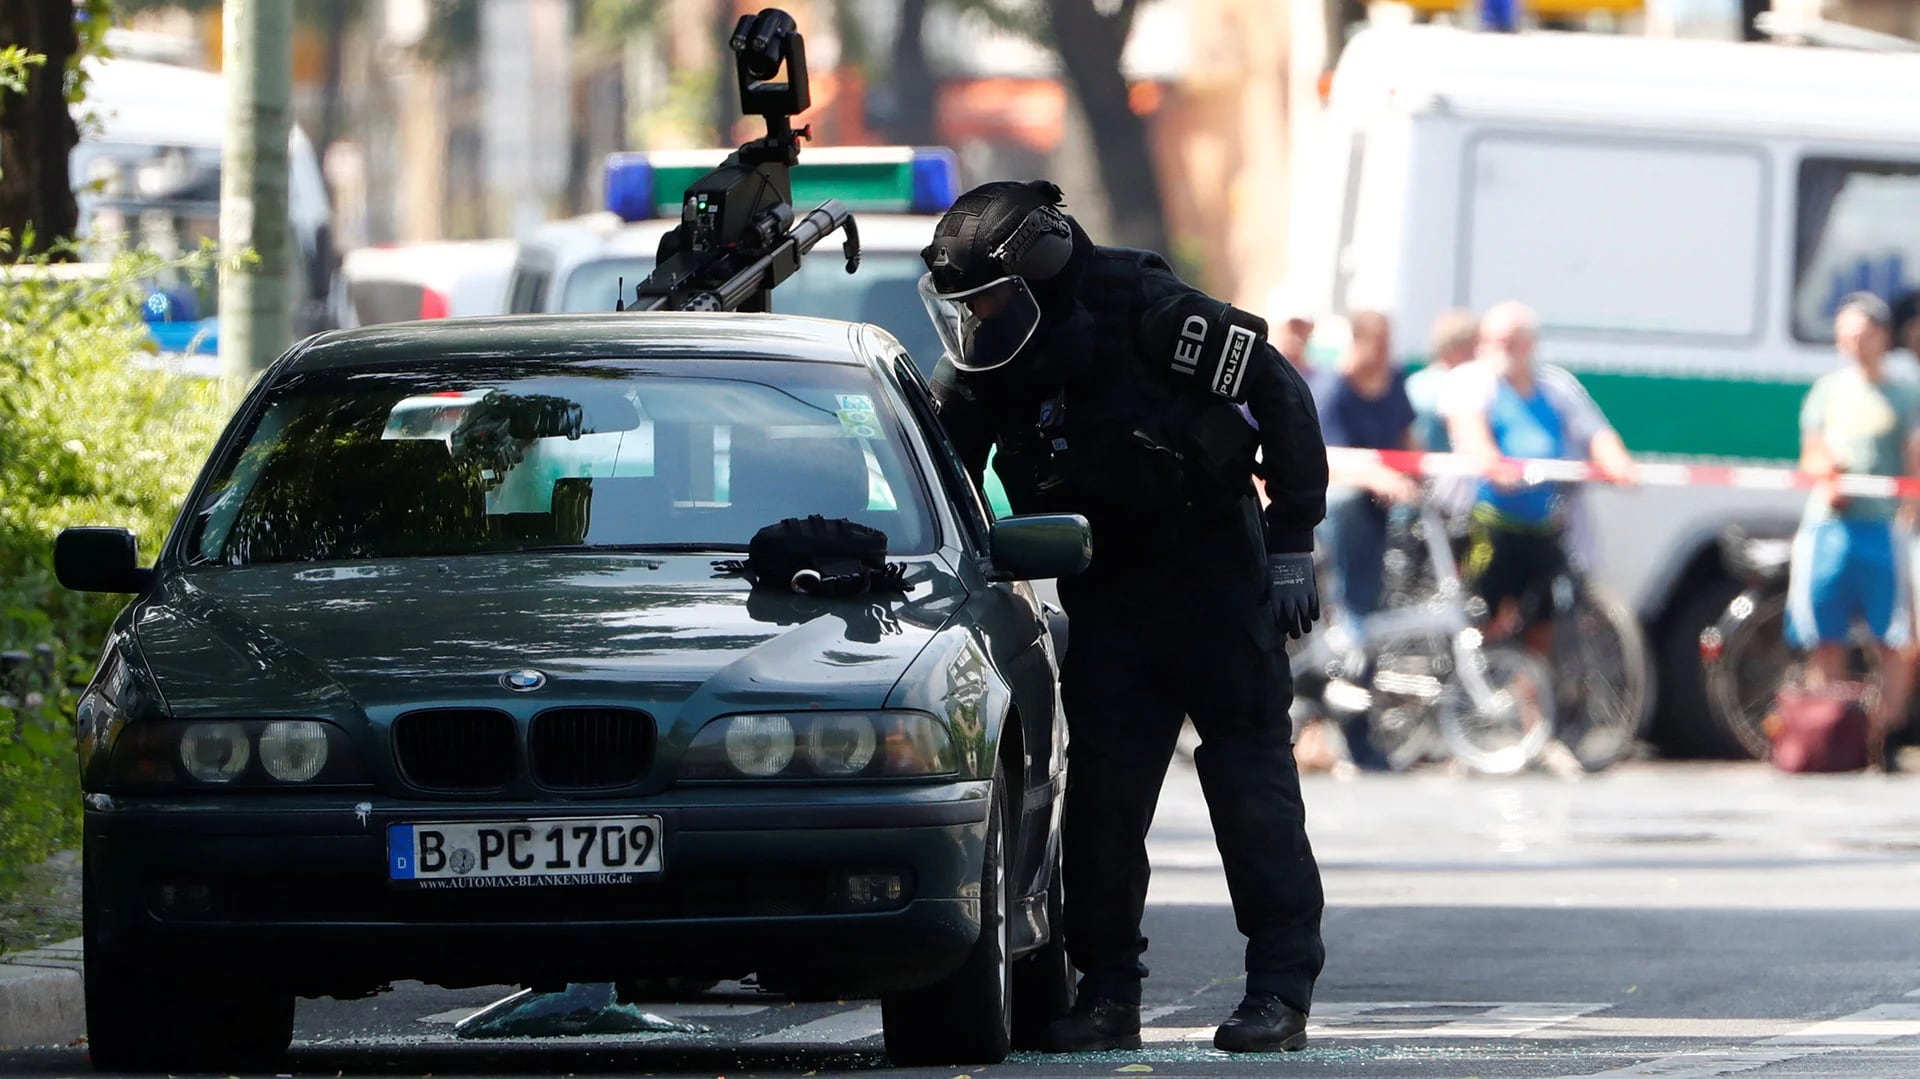 Un especialista antibomba se aproxima al auto utilizando un equipo protector (Reuters)